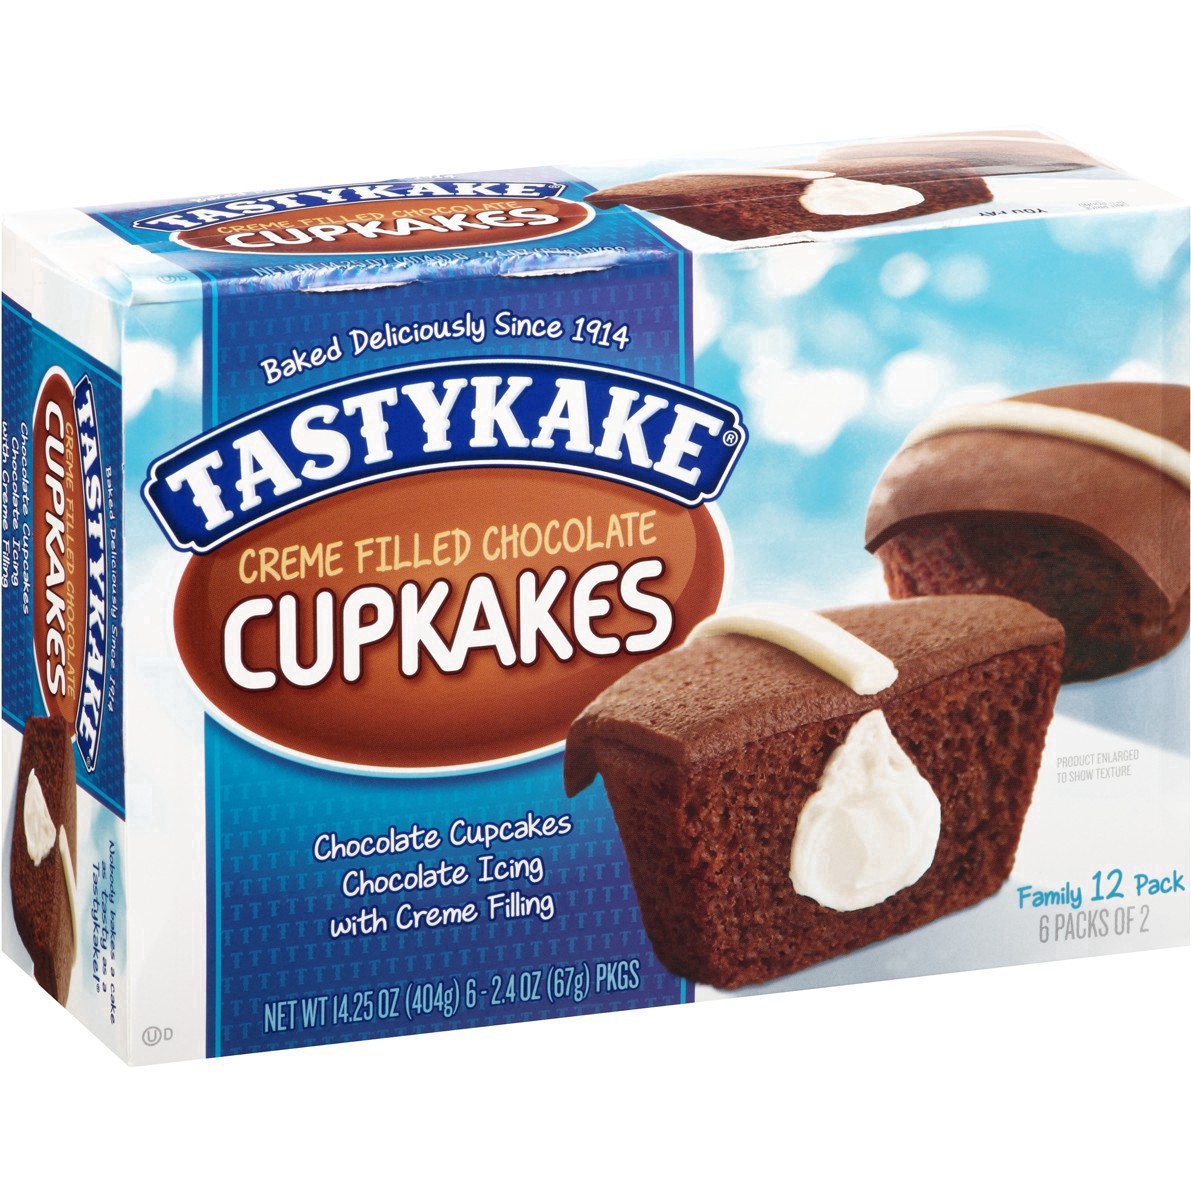 slide 45 of 59, Tastykake Creme Filled Chocolate Cupcakes 6-2.4 oz. Packs, 6 ct